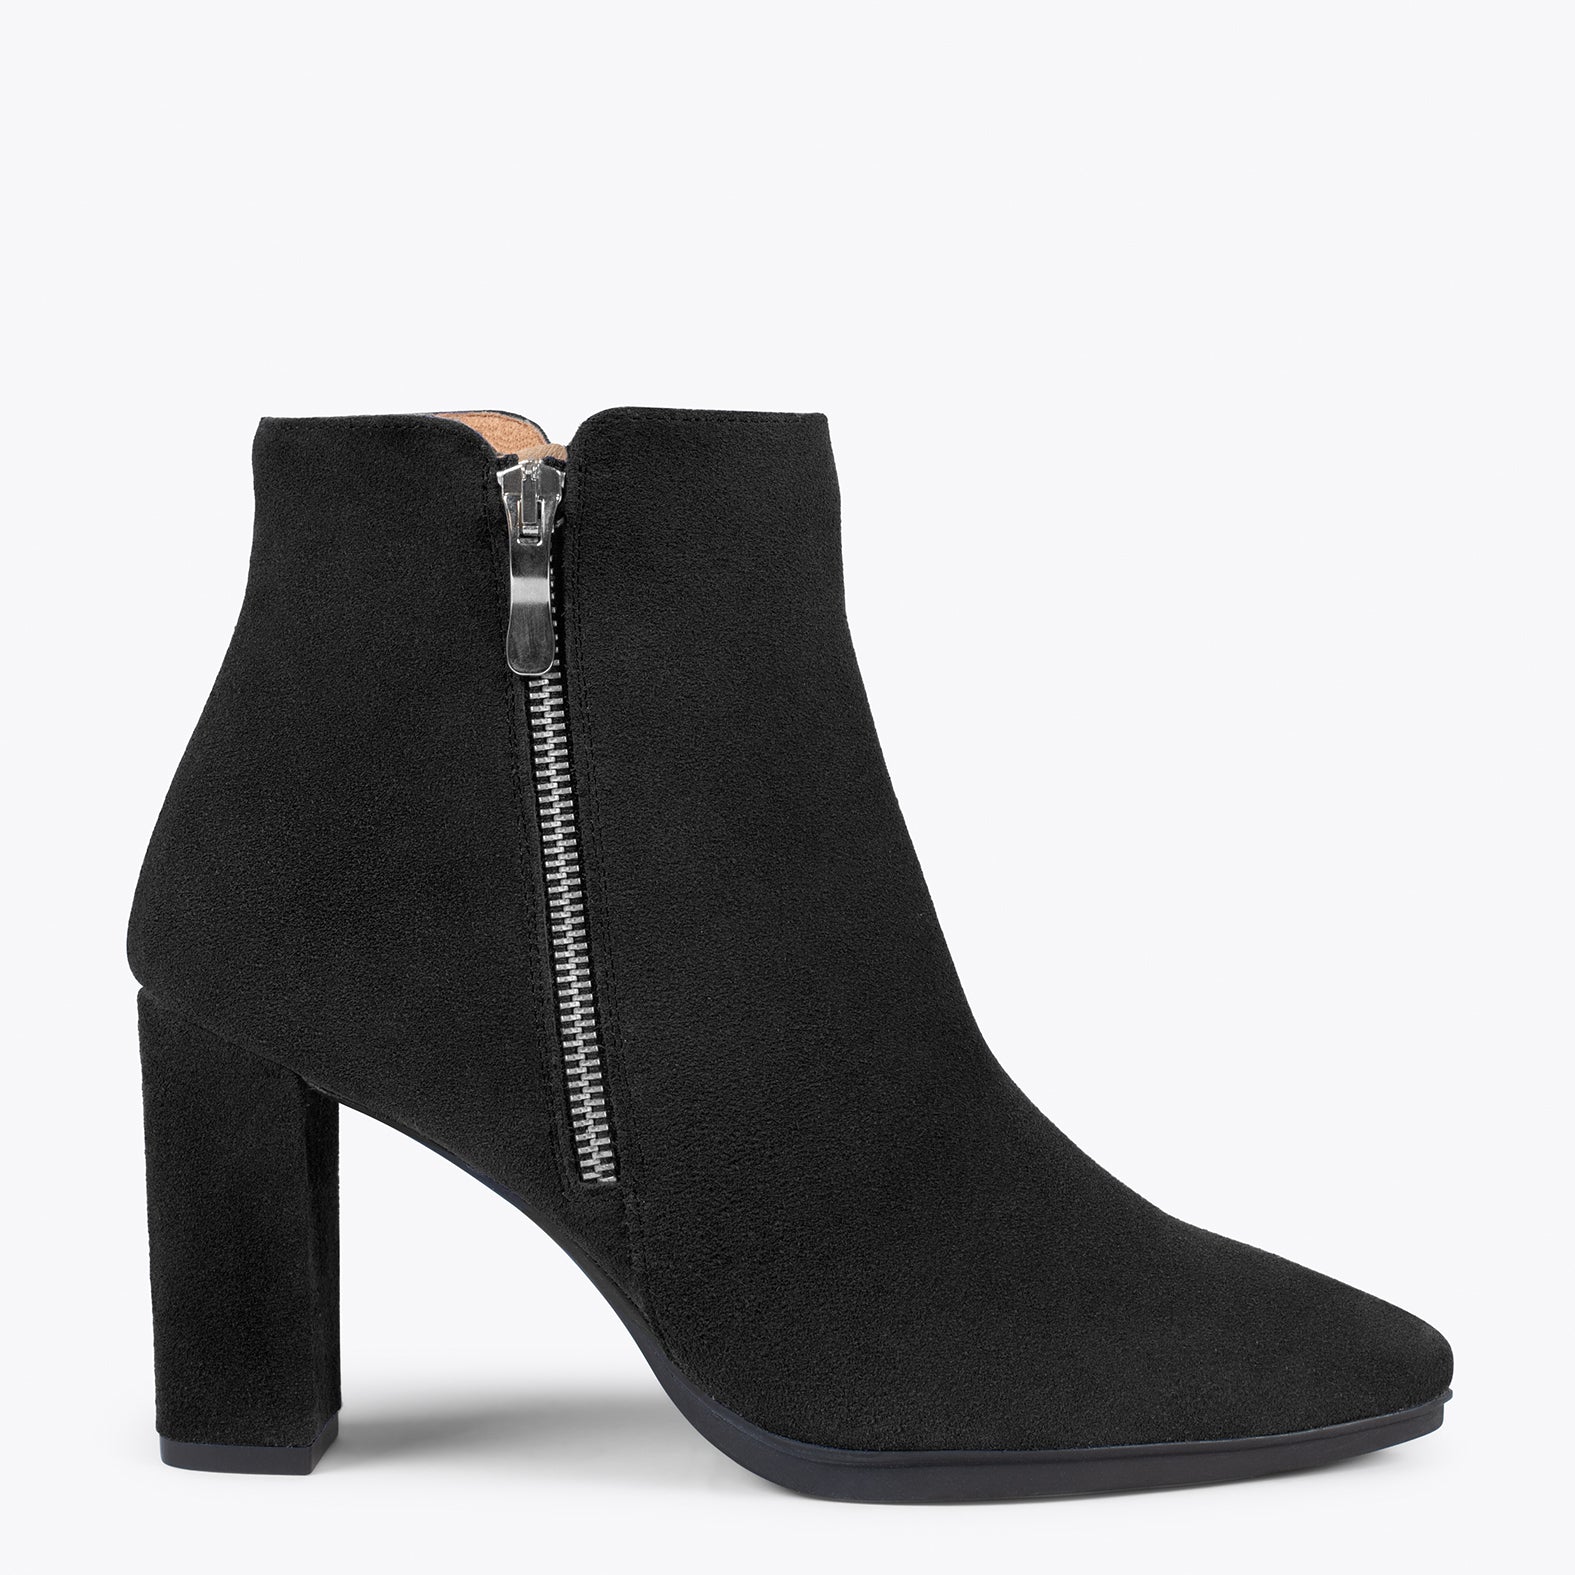 URBAN BOOTIE – BLACK high heel booties